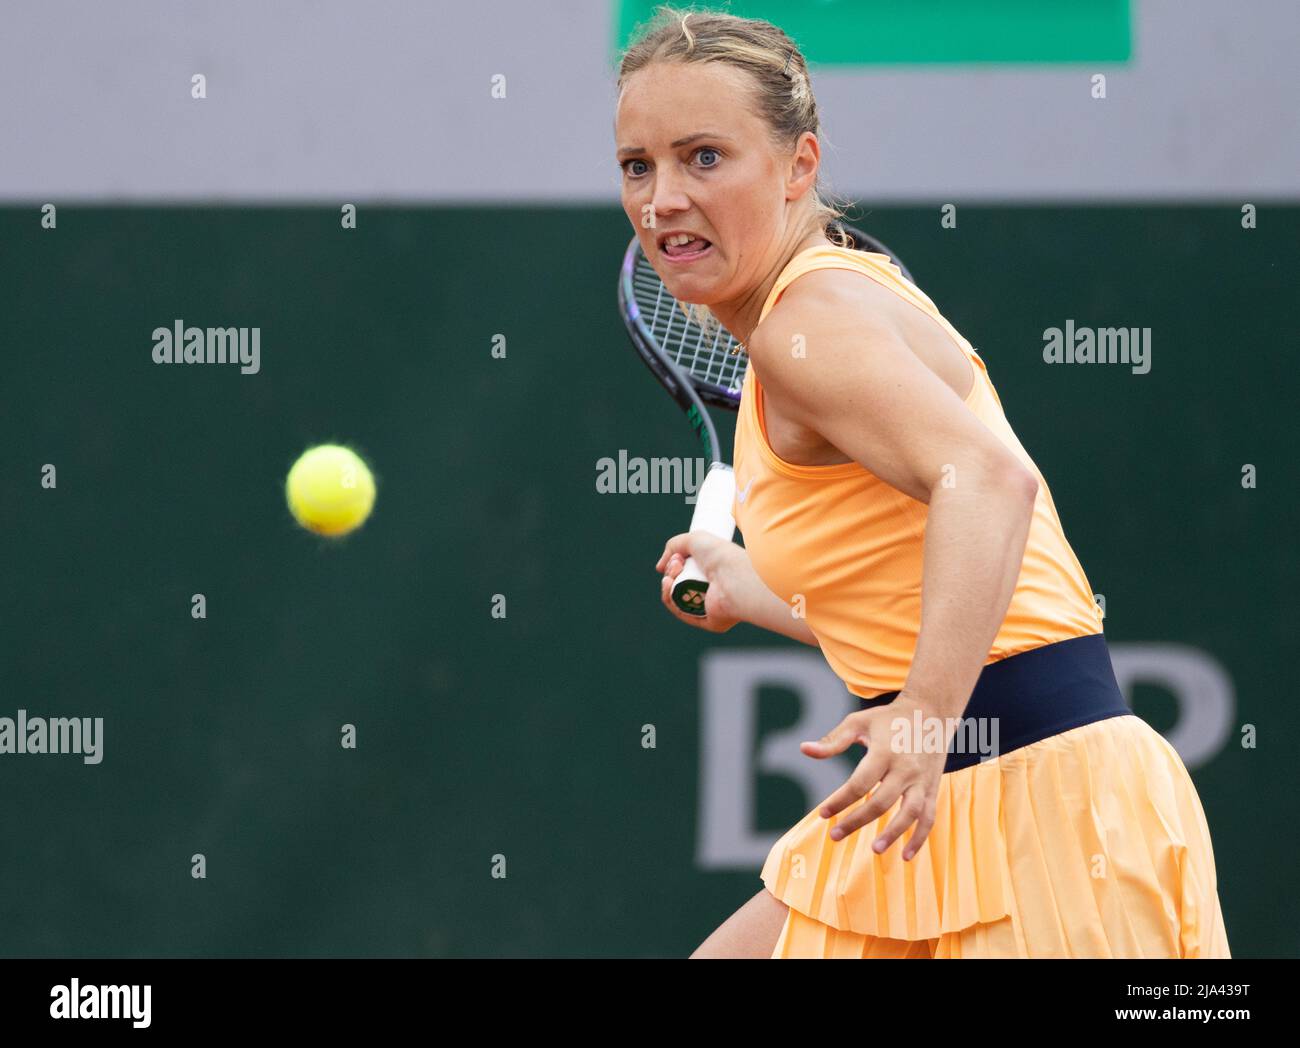 Die Belgierin Kimberley Zimmermann wurde während eines Tennismatches zwischen dem belgischen Paar Zanevska - Zimmermann und dem US-amerikanischen Krawczyk - dem Niederländer Demi Schu in Aktion gezeigt Stockfoto